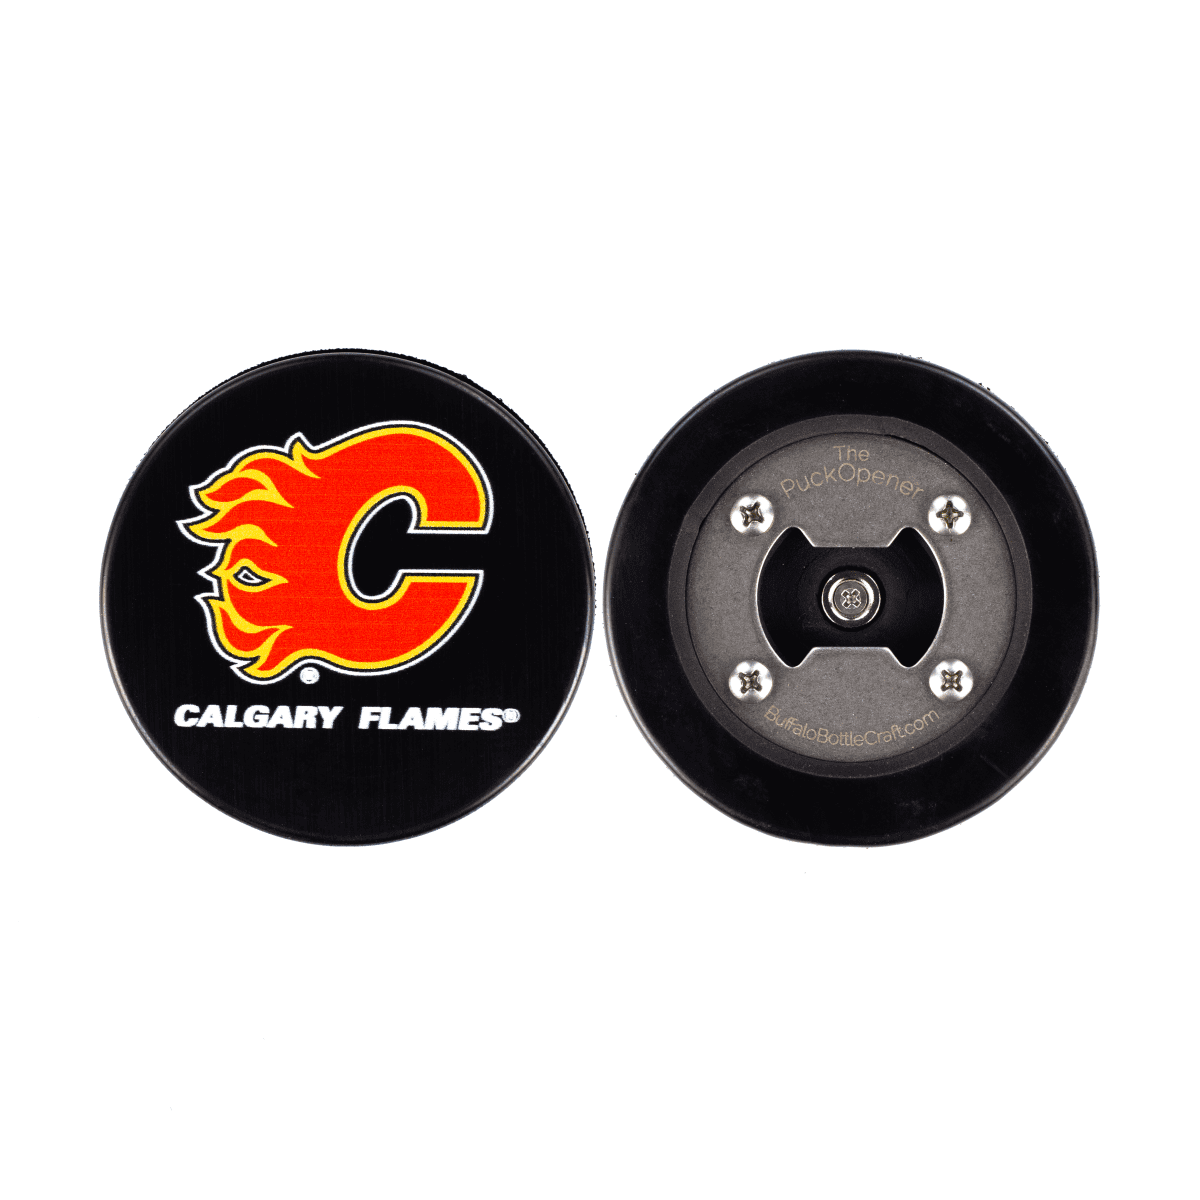 Calgary Flames, Hockey Puck Bottle Opener